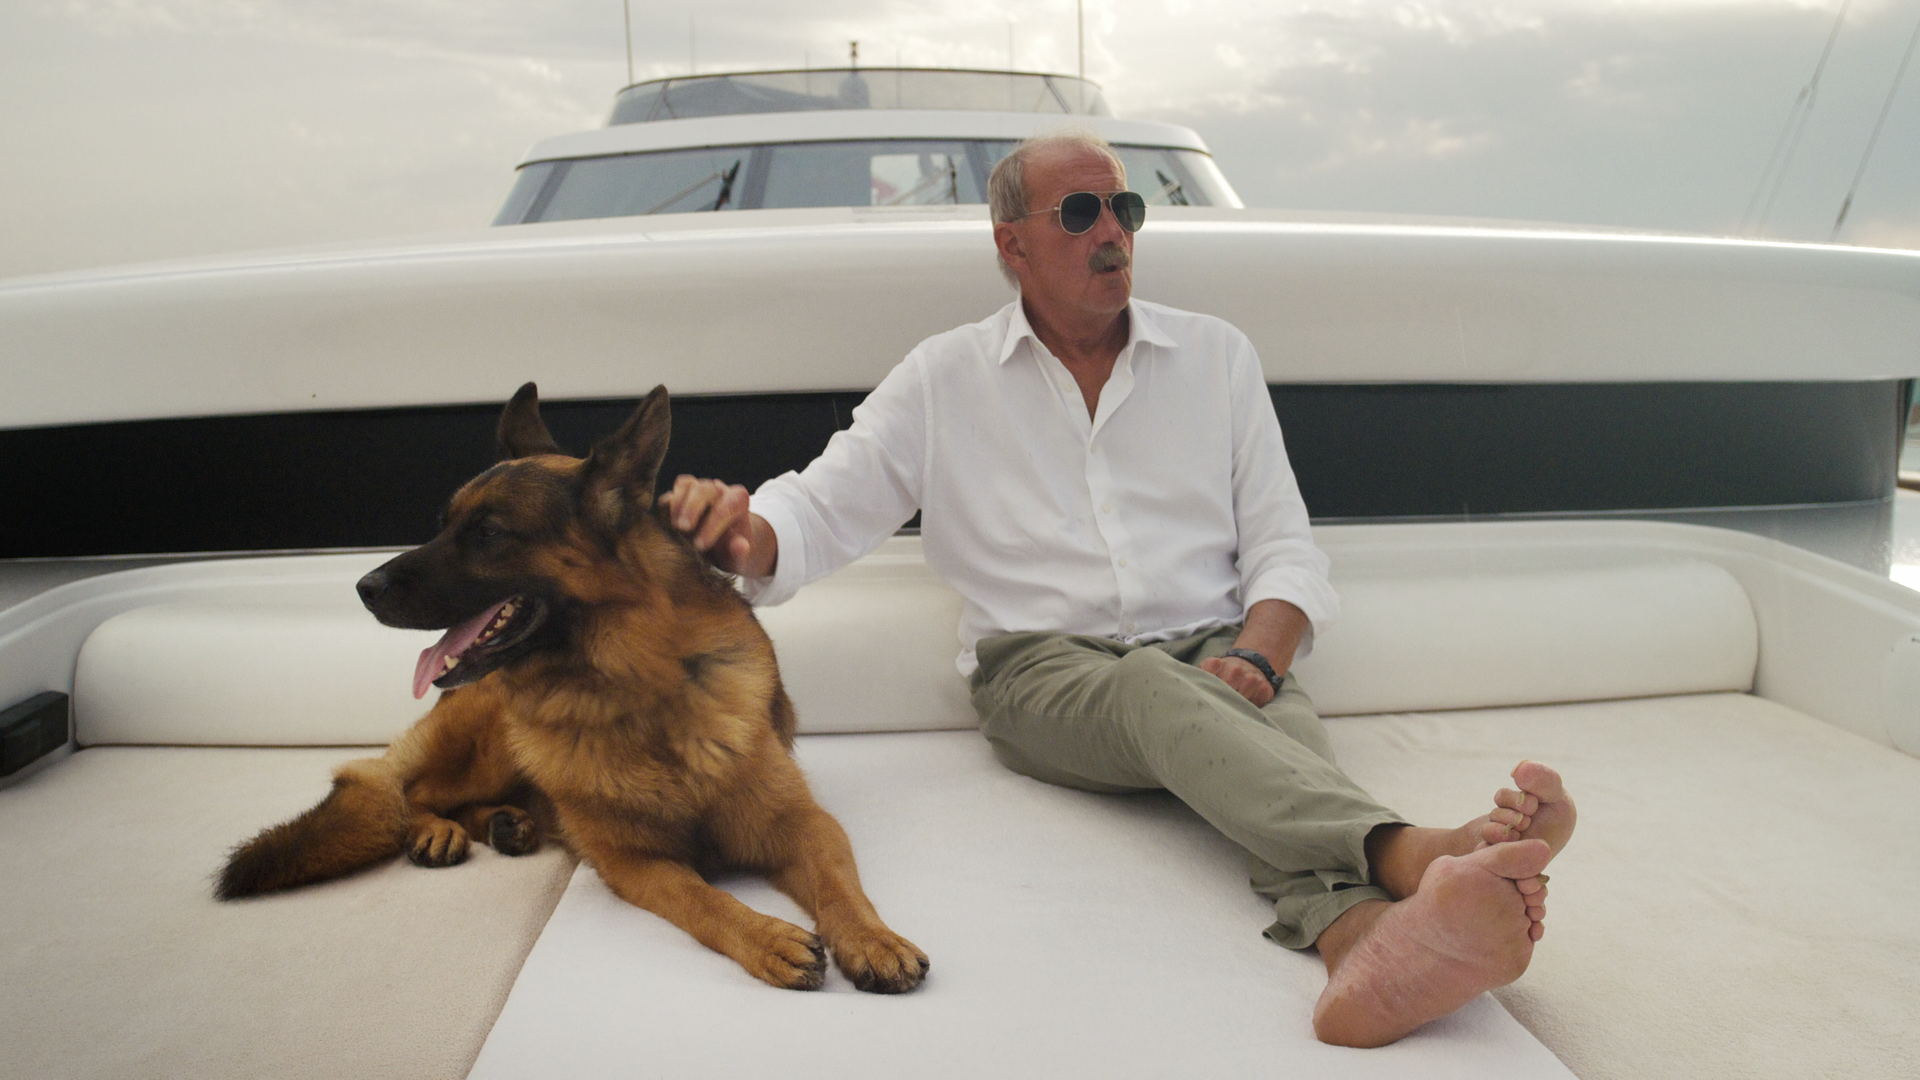 Szene aus der Netflix-Miniserie "Gunthers Millionen": Der Schäferhund Gunther sitzt auf einem weißen Polster an Deck einer Yacht, neben ihm ein Mann in heller Kleidung und mit Sonnenbrille. 